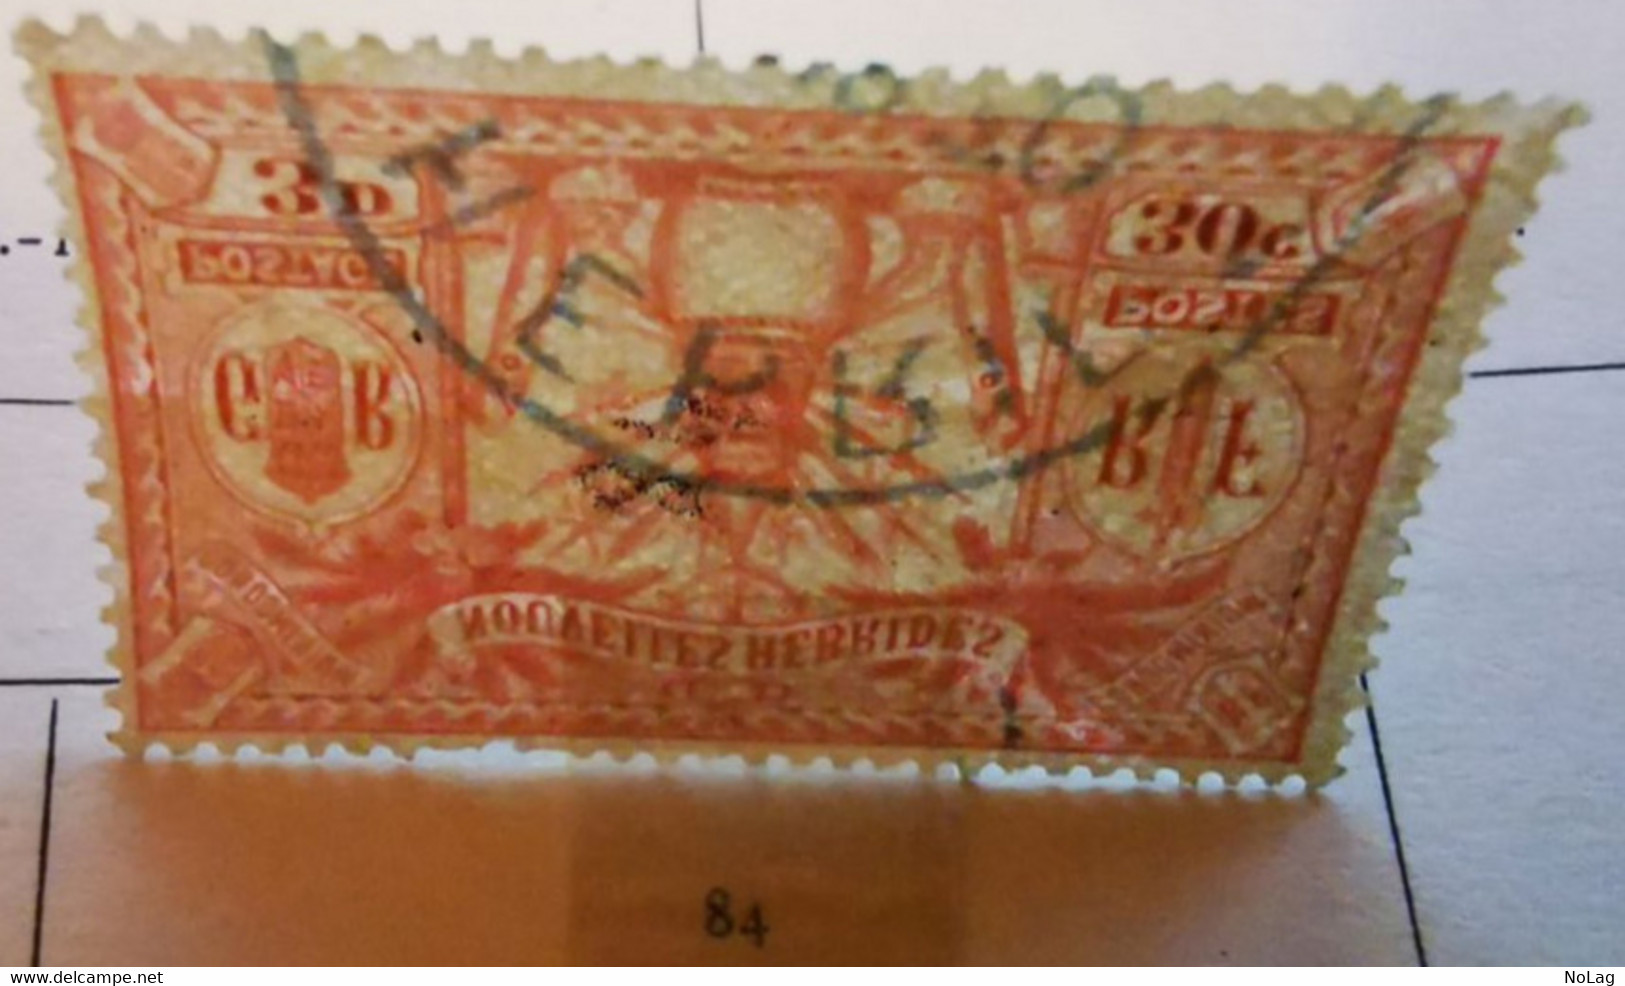 Nouvelles-Hebrides - 1911-25 - Colonies françaises - Lot de 3 timbres - N°38, N°40 et N°30, N°50-51 et N°84 /0/